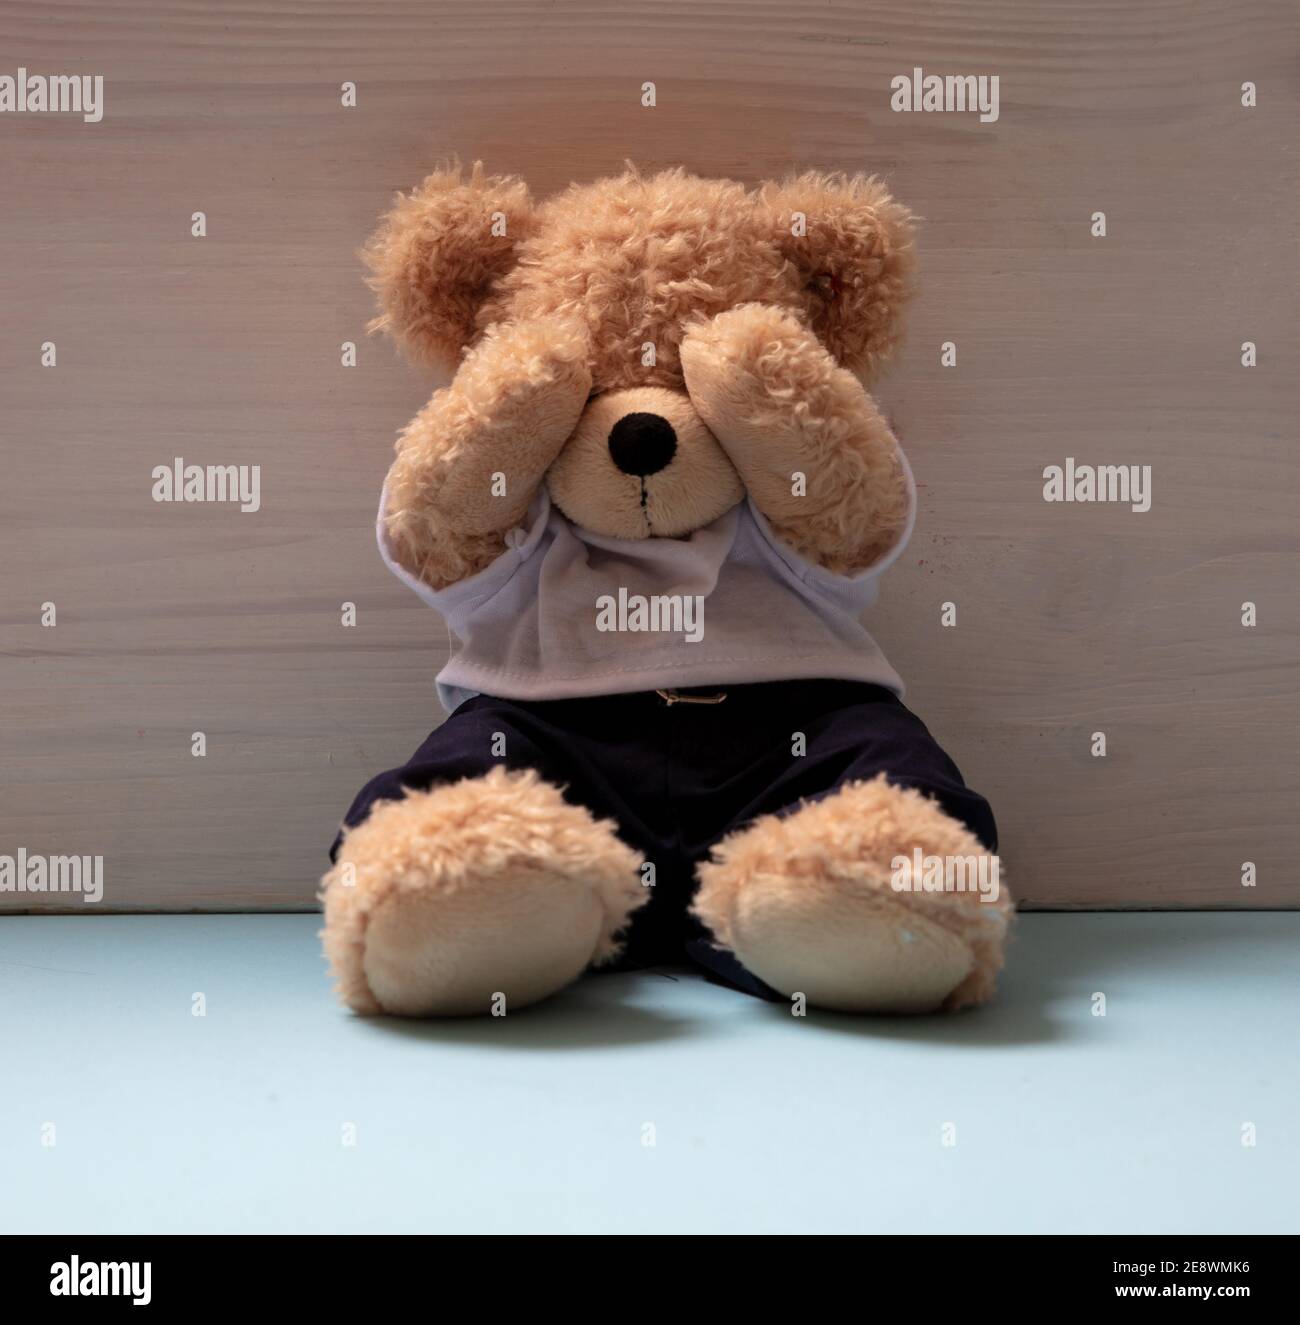 Teddybär sitzt allein auf blauem Boden in einem leeren Kinderzimmer, Augen bedeckt, Kindesmissbrauch, traurige Angst Kind Konzept. Stockfoto